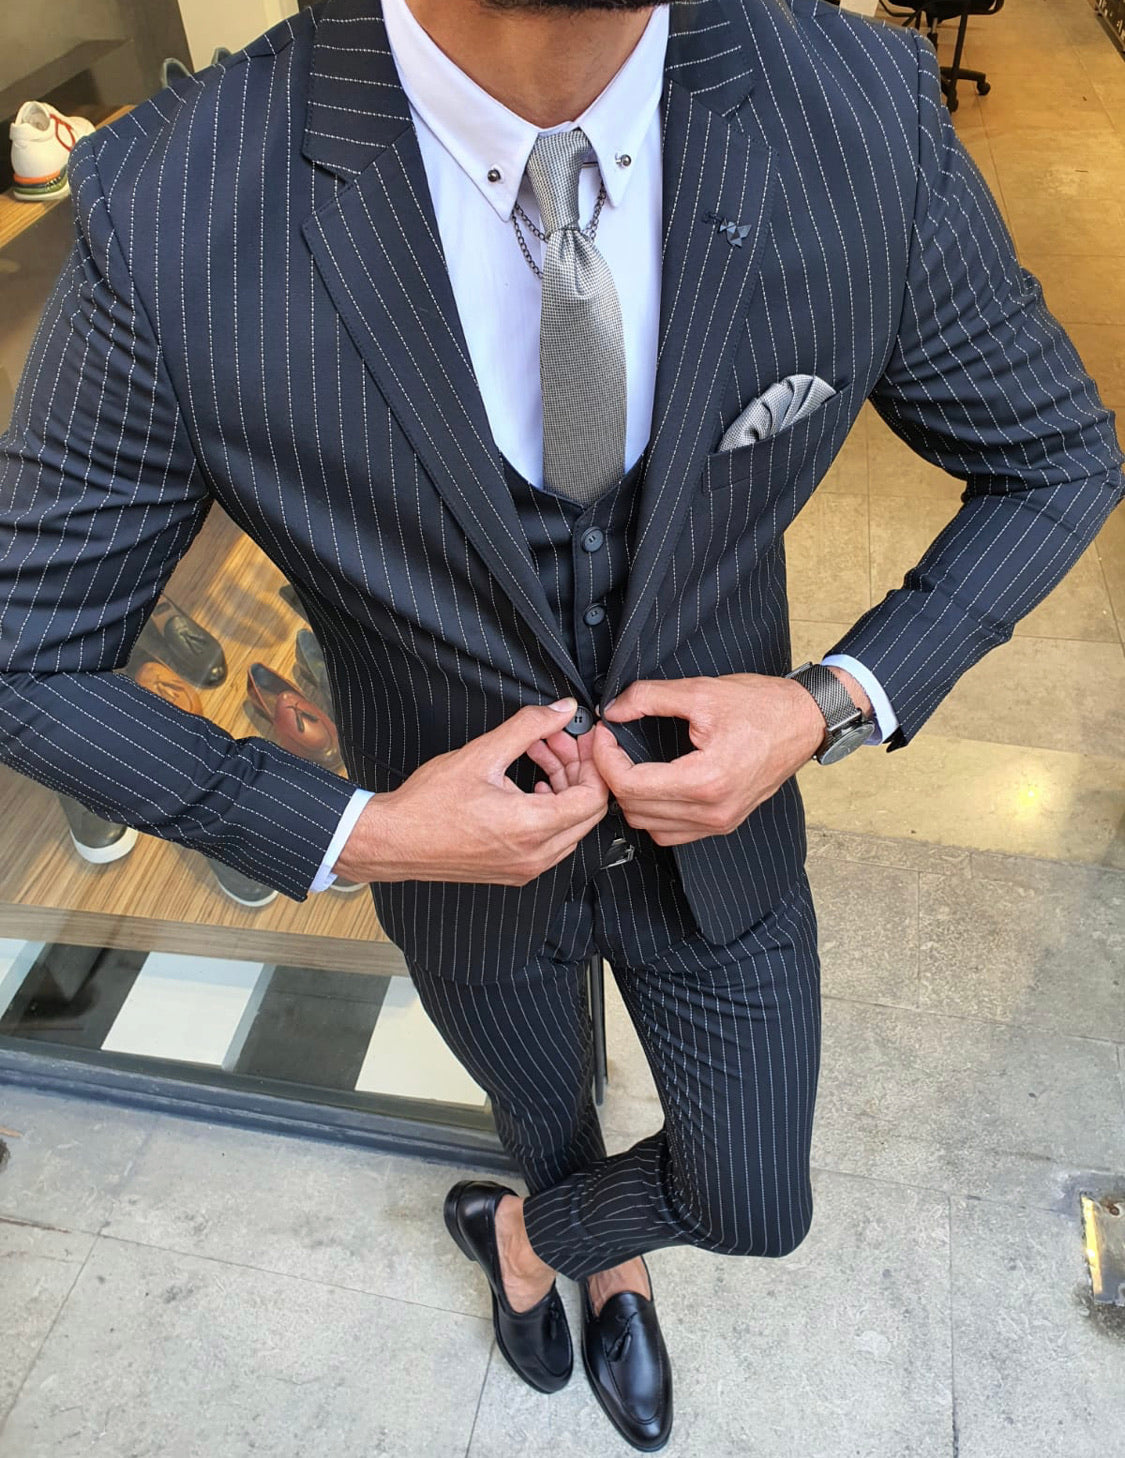 Forenzax Black Classic Slim Fit Suit